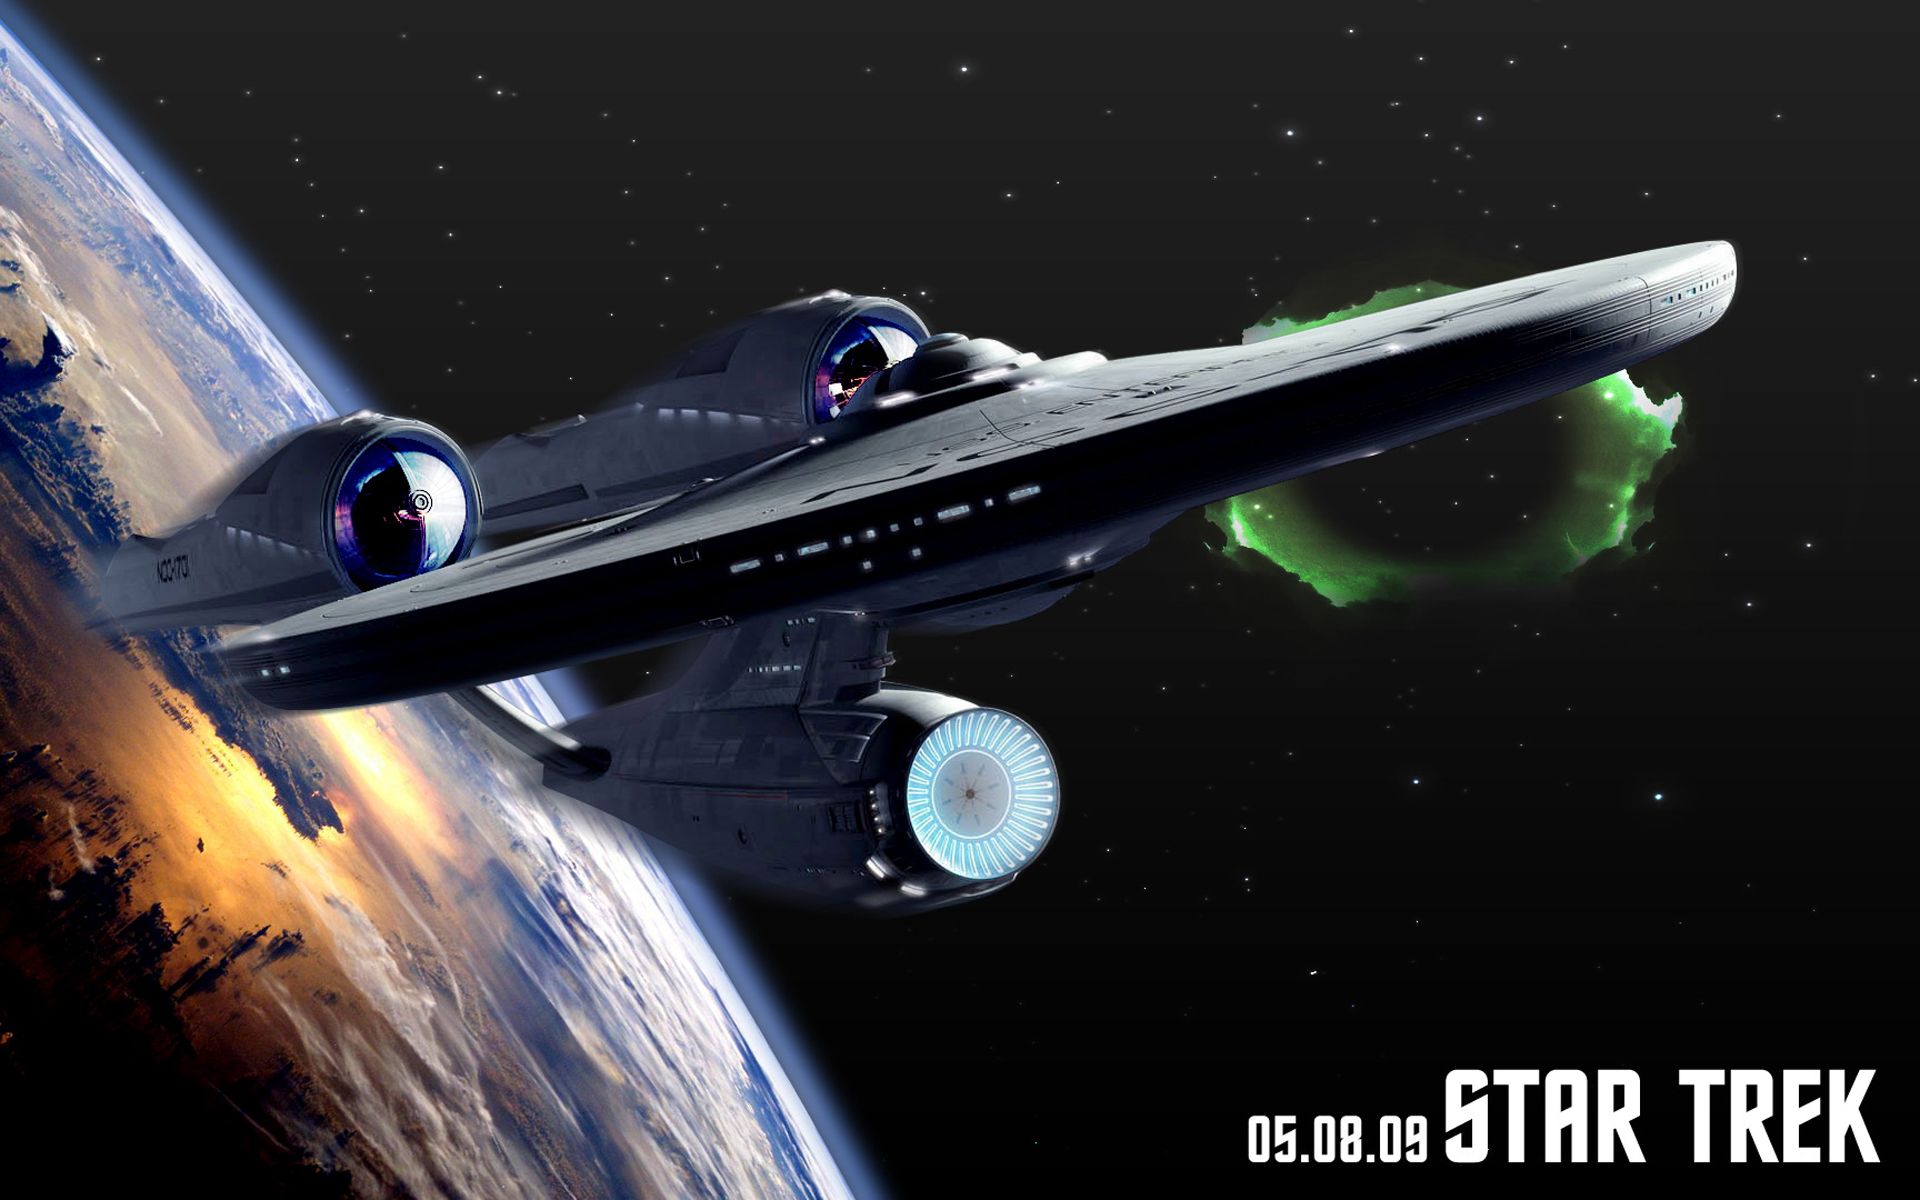 Star Trek Uss Enterprise Wallpaper